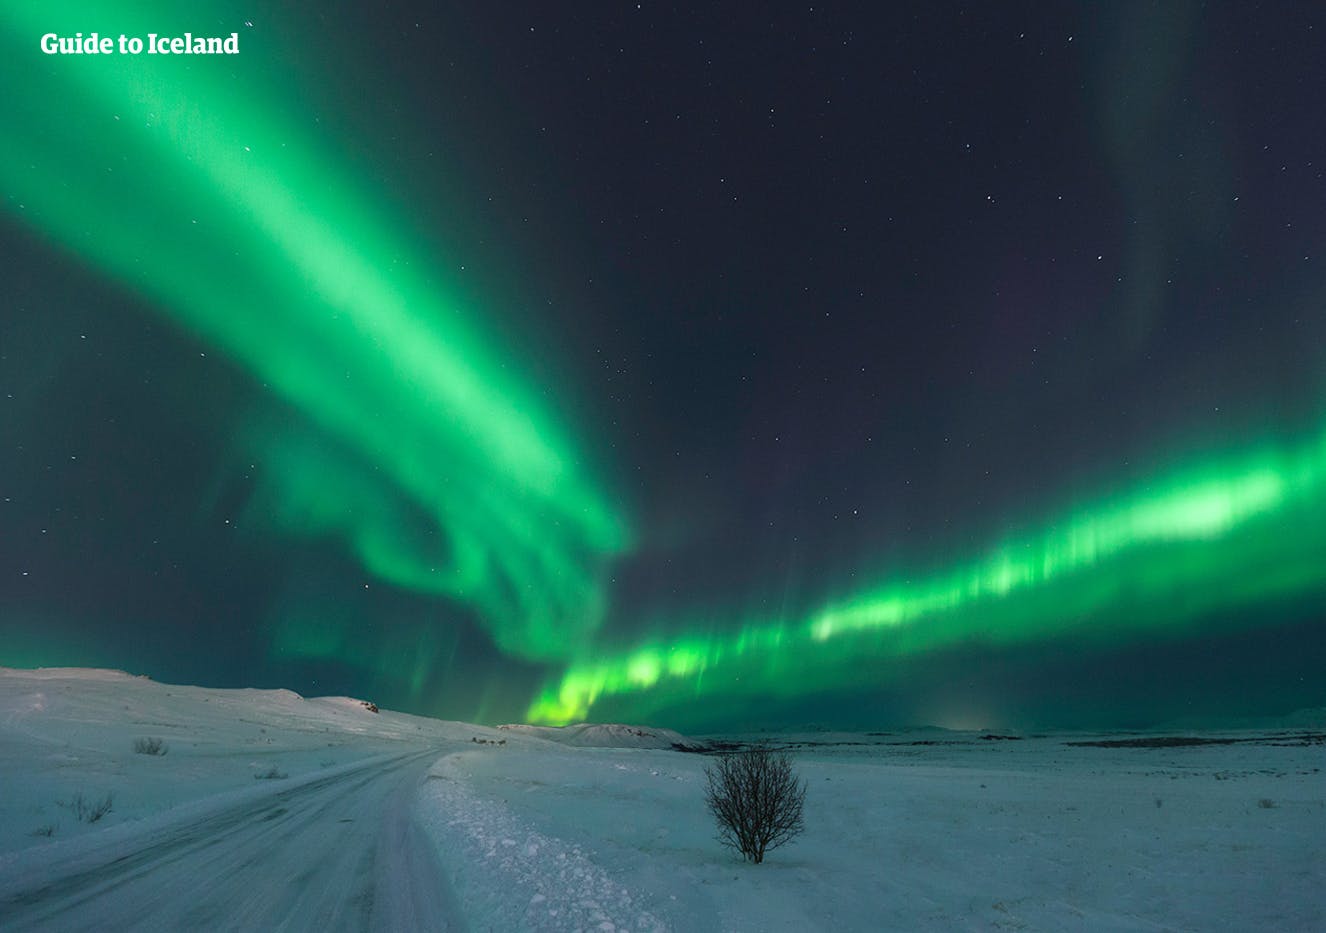 Quando guidi di notte in Islanda in inverno, hai ottime possibilità di avvistare l'aurora boreale.